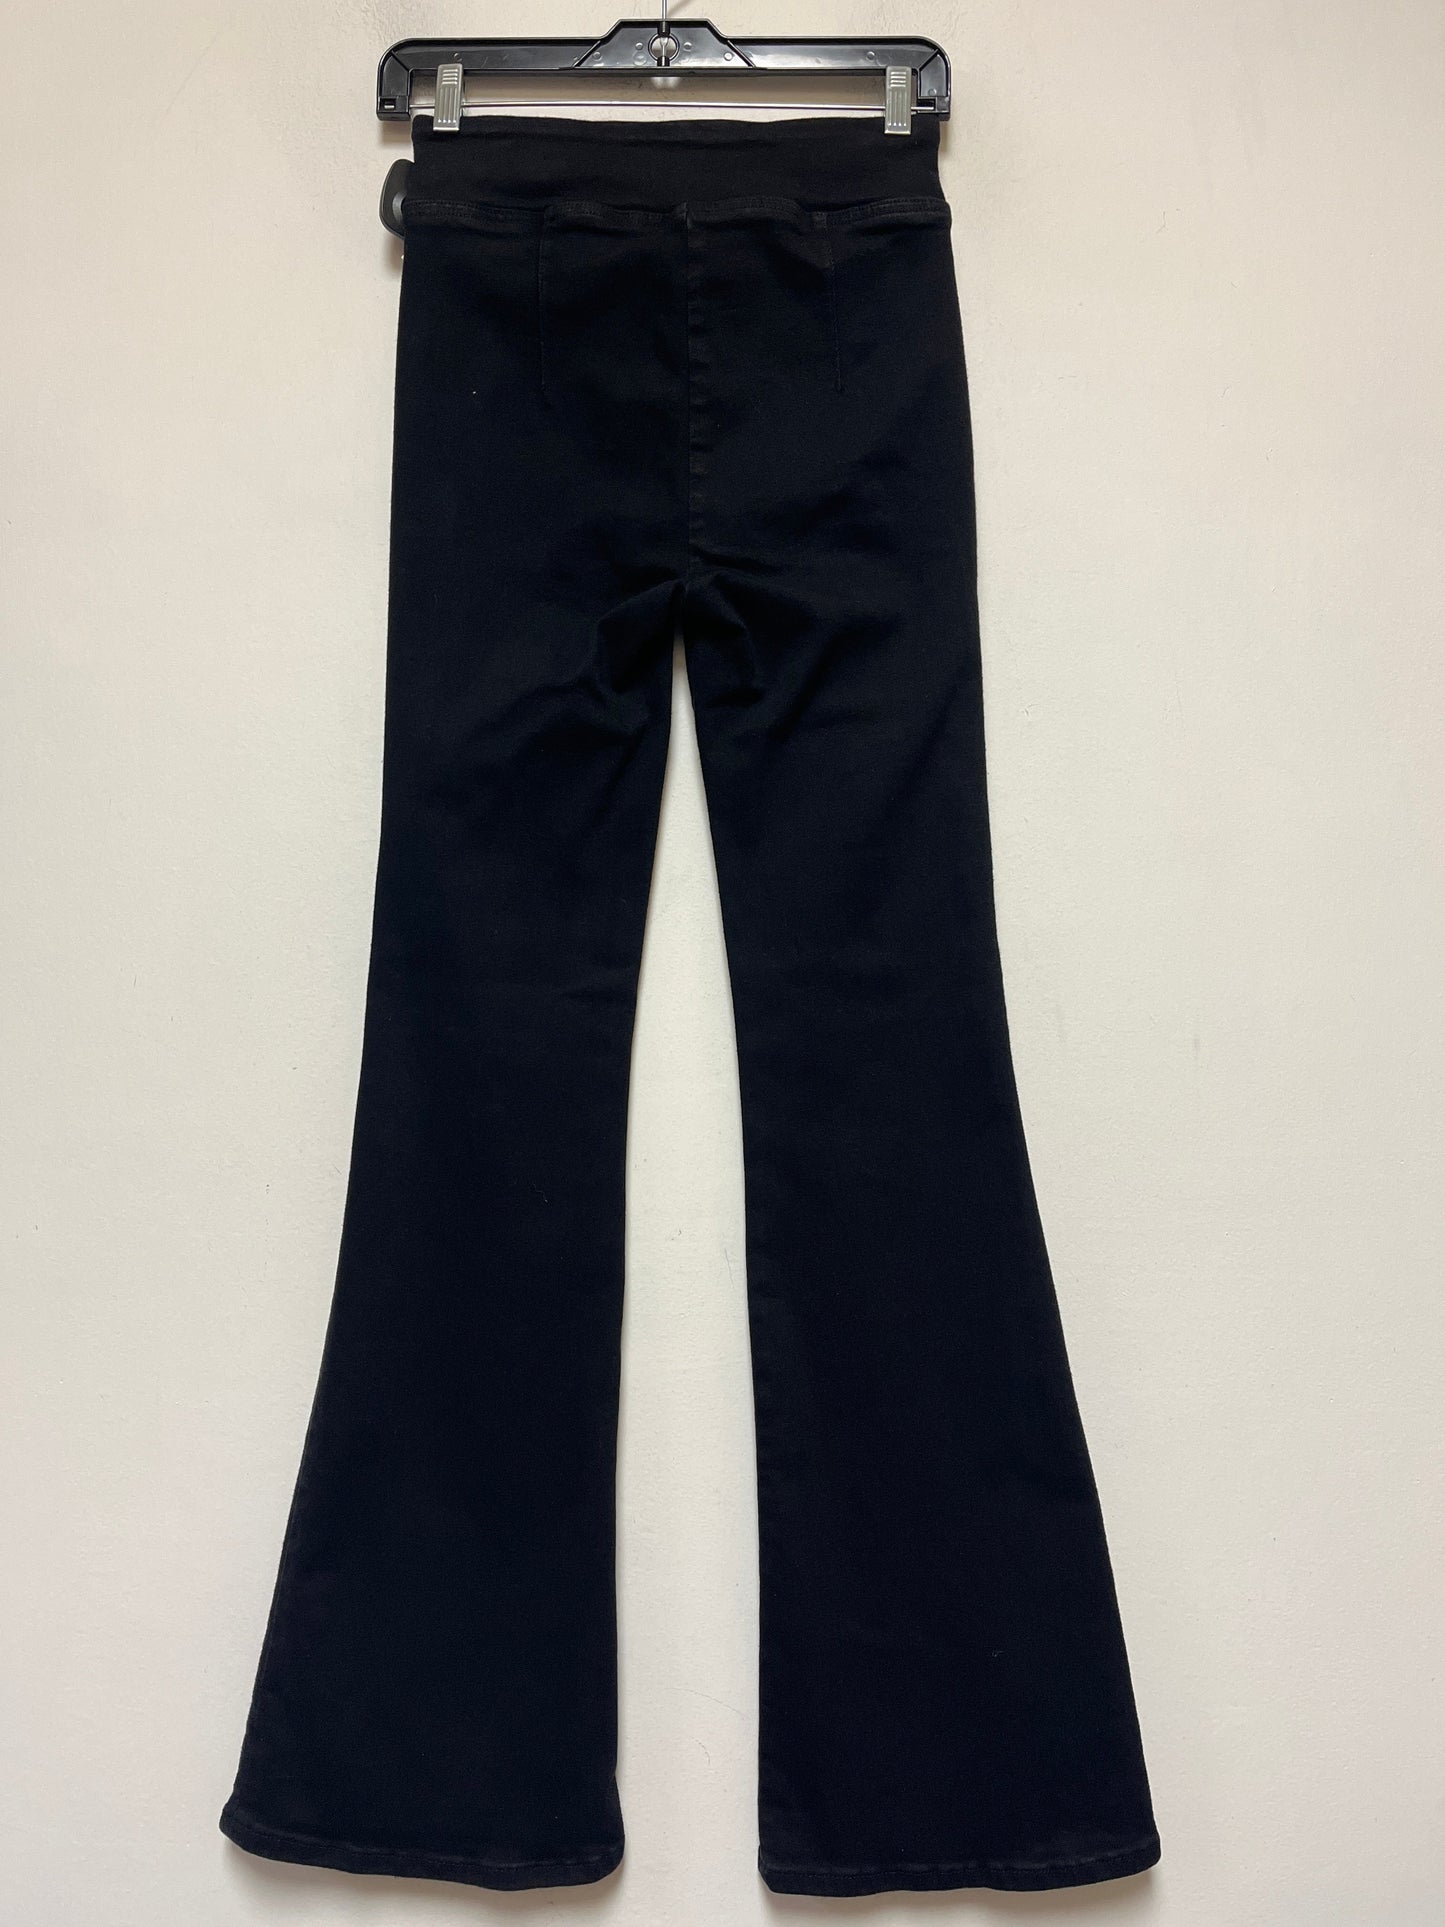 Black Denim Jeans Flared Frame, Size 1